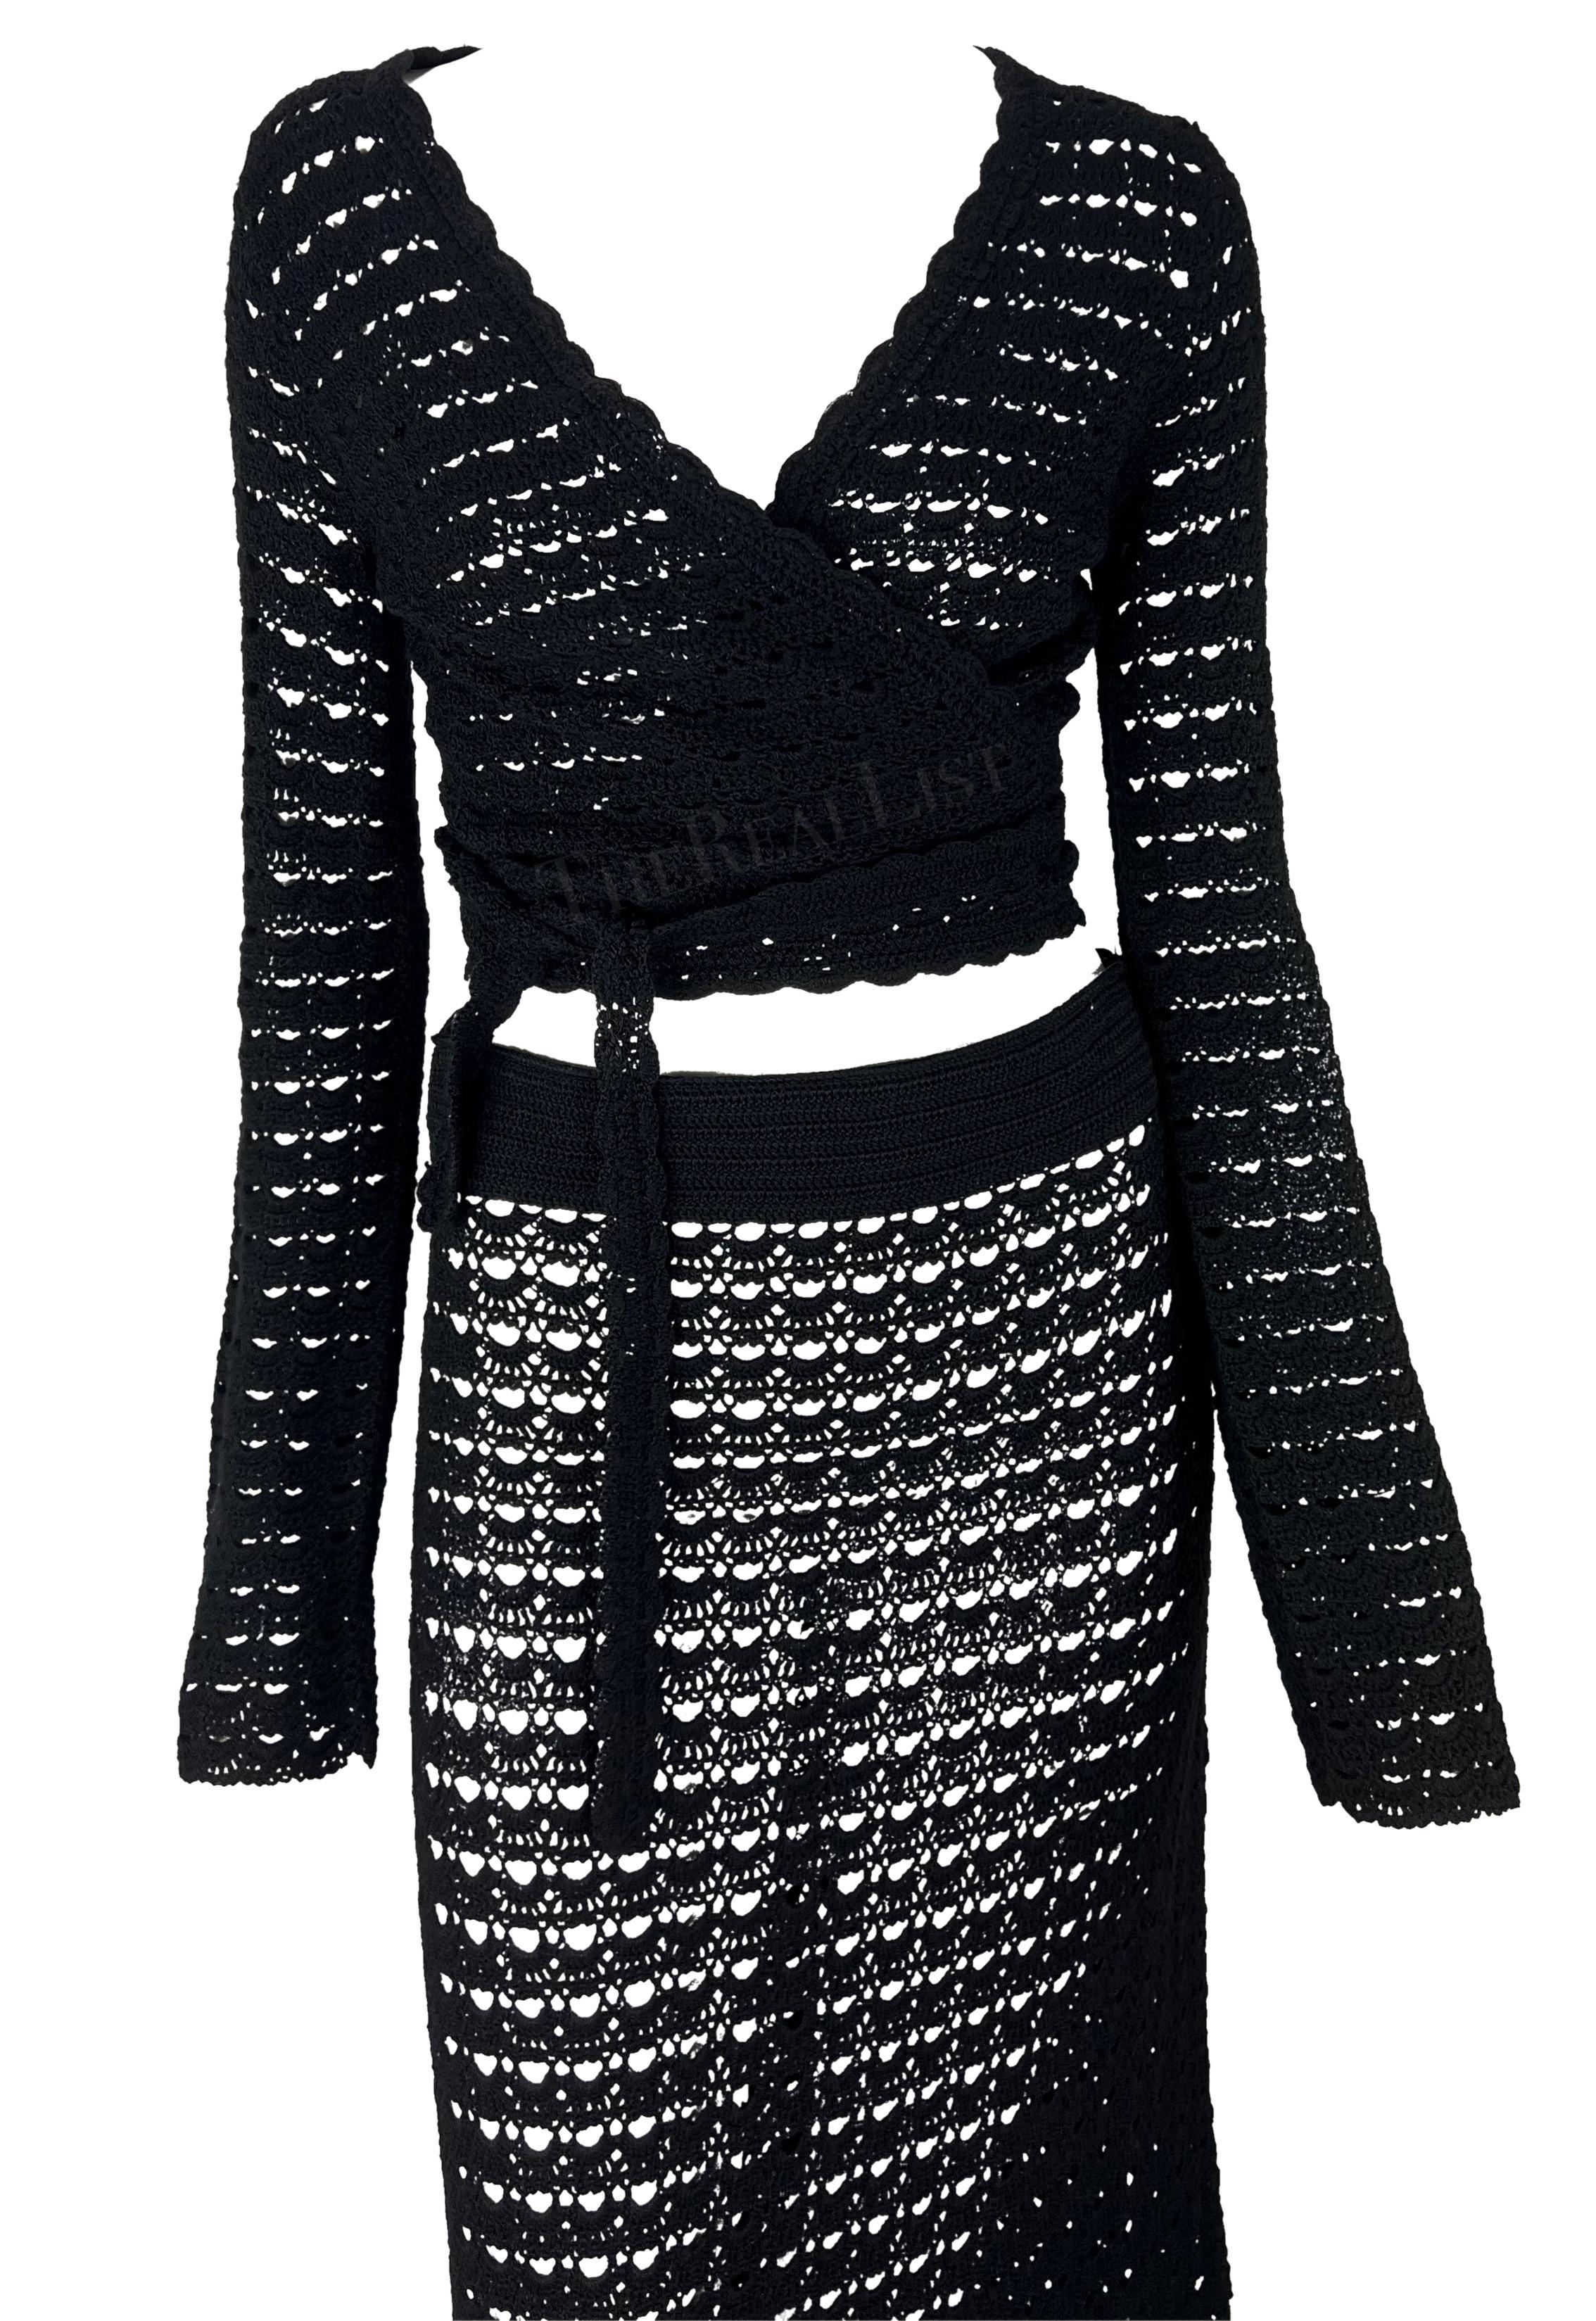 S/S 1997 Dolce & Gabbana Black Knit Crochet Maxi Skirt Wrap Top Skirt Set Excellent état - En vente à West Hollywood, CA